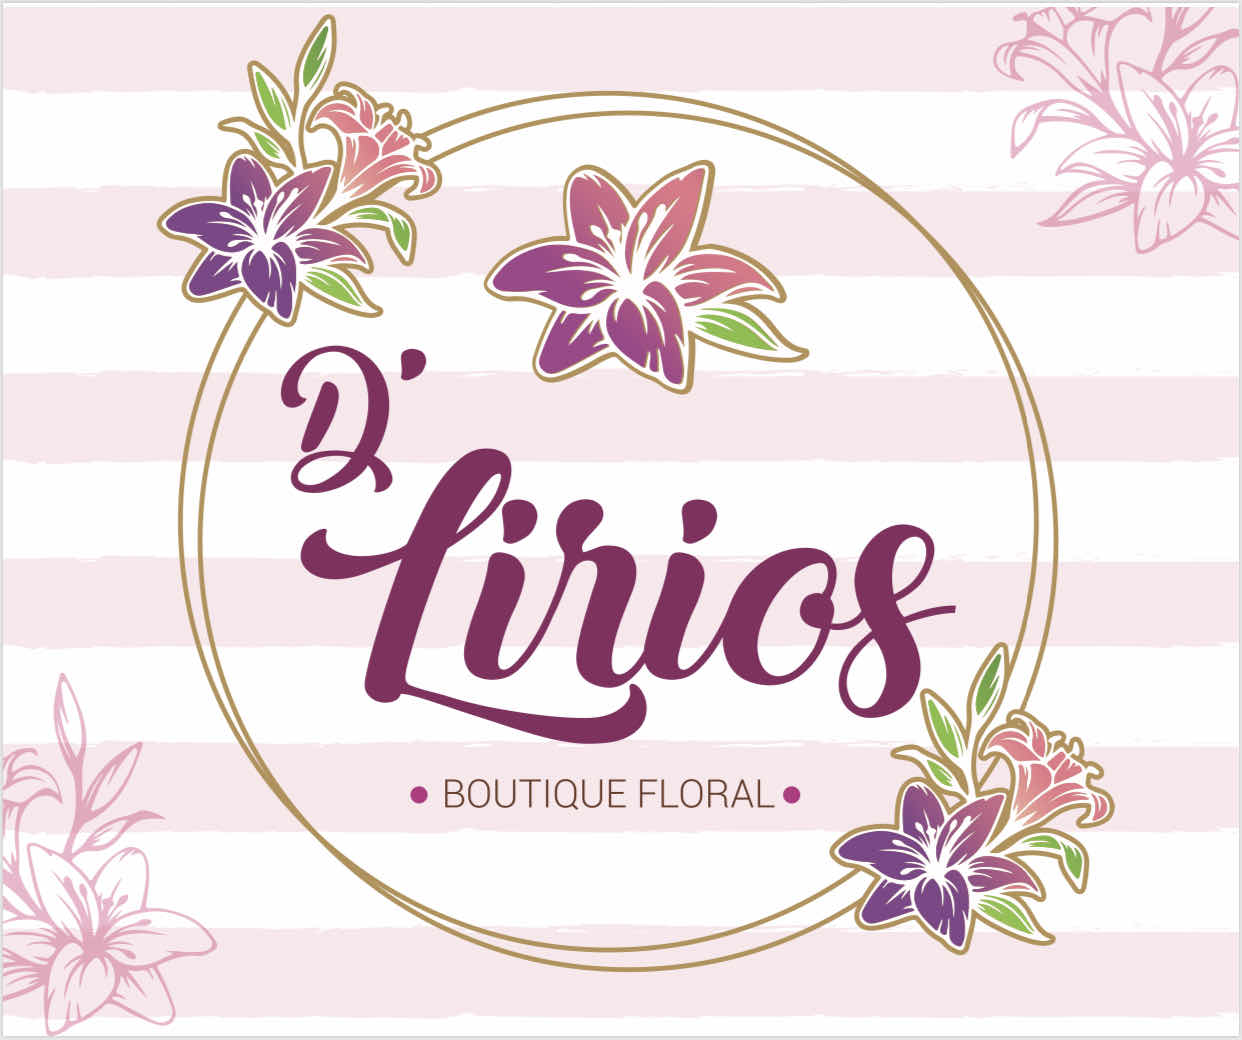 D’lirios boutique floral